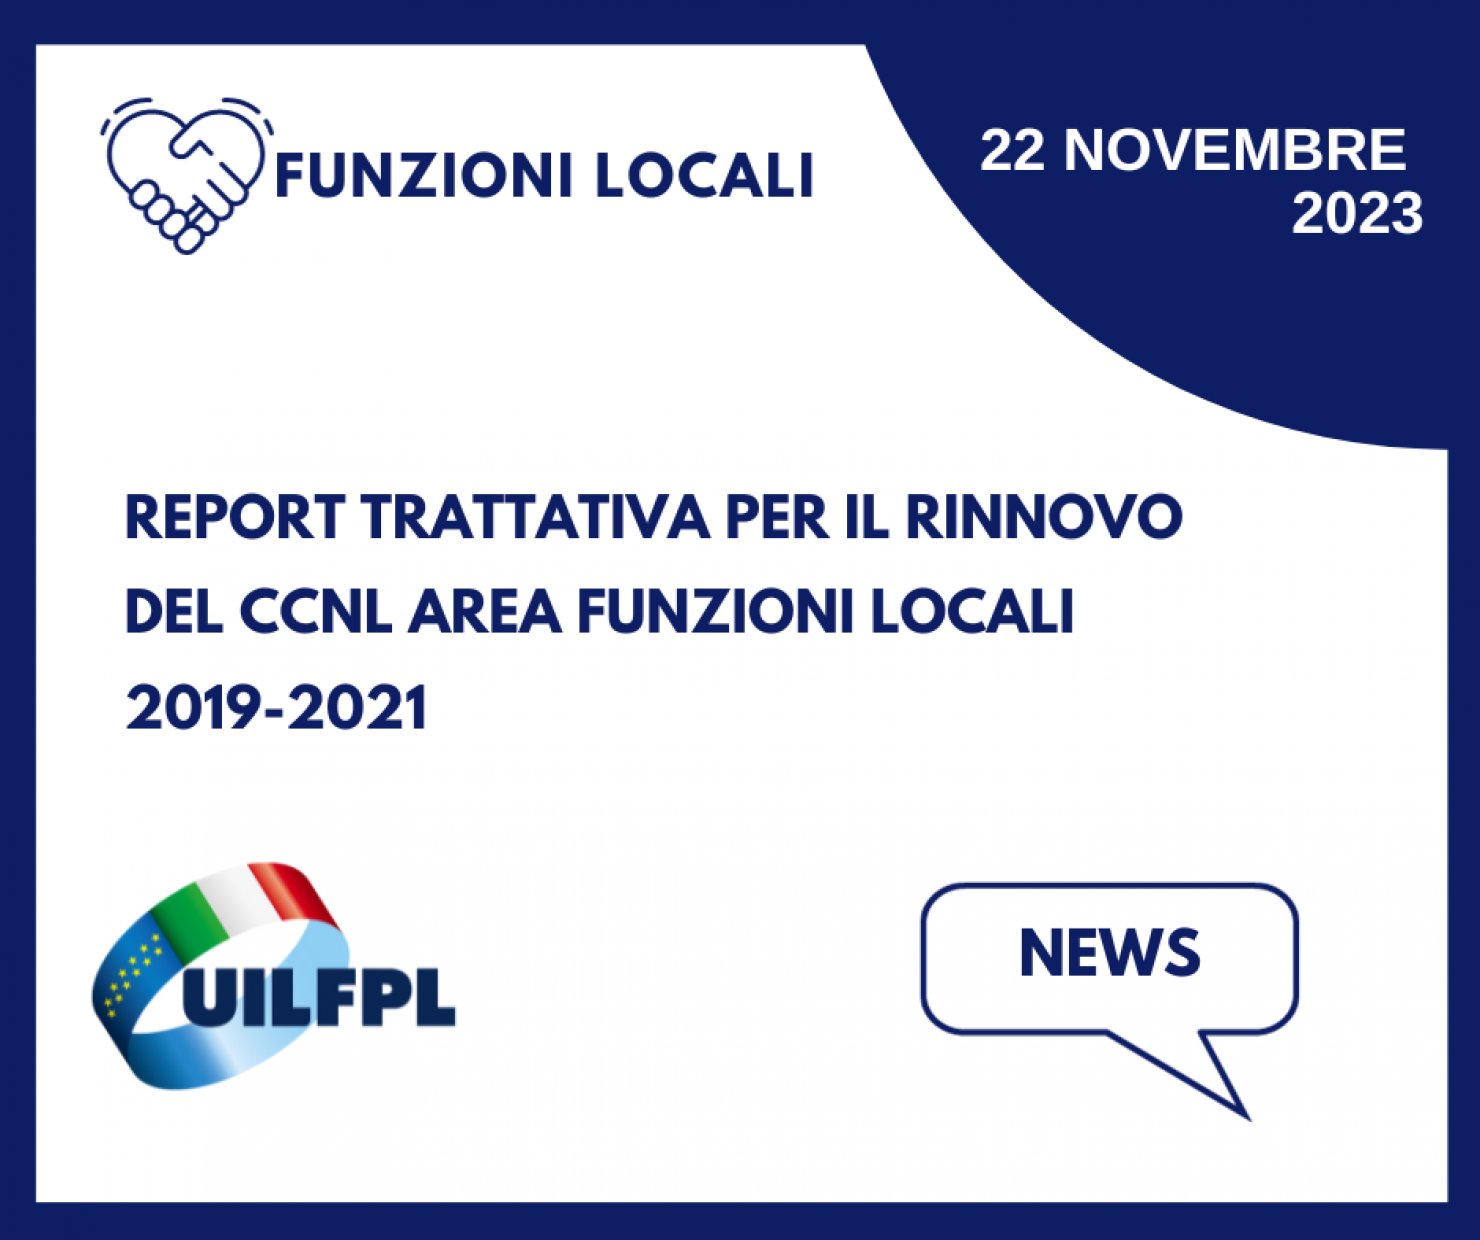 Report sulla trattativa per il rinnovo del CCNL Area Funzioni locali 2019 - 2021